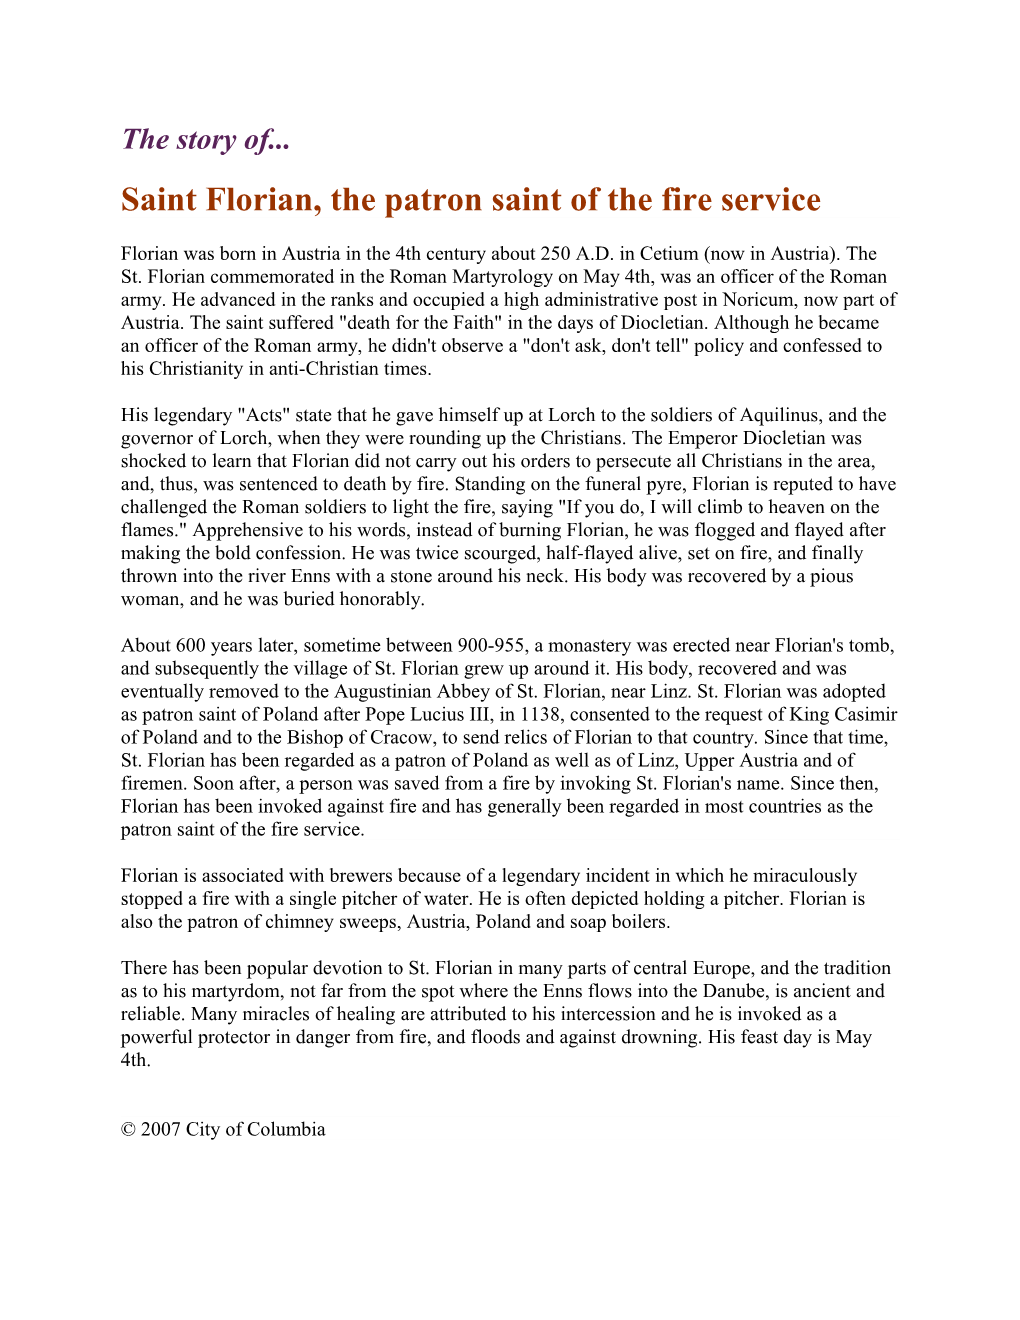 Saint Florian, the Patron Saint of the Fire Service